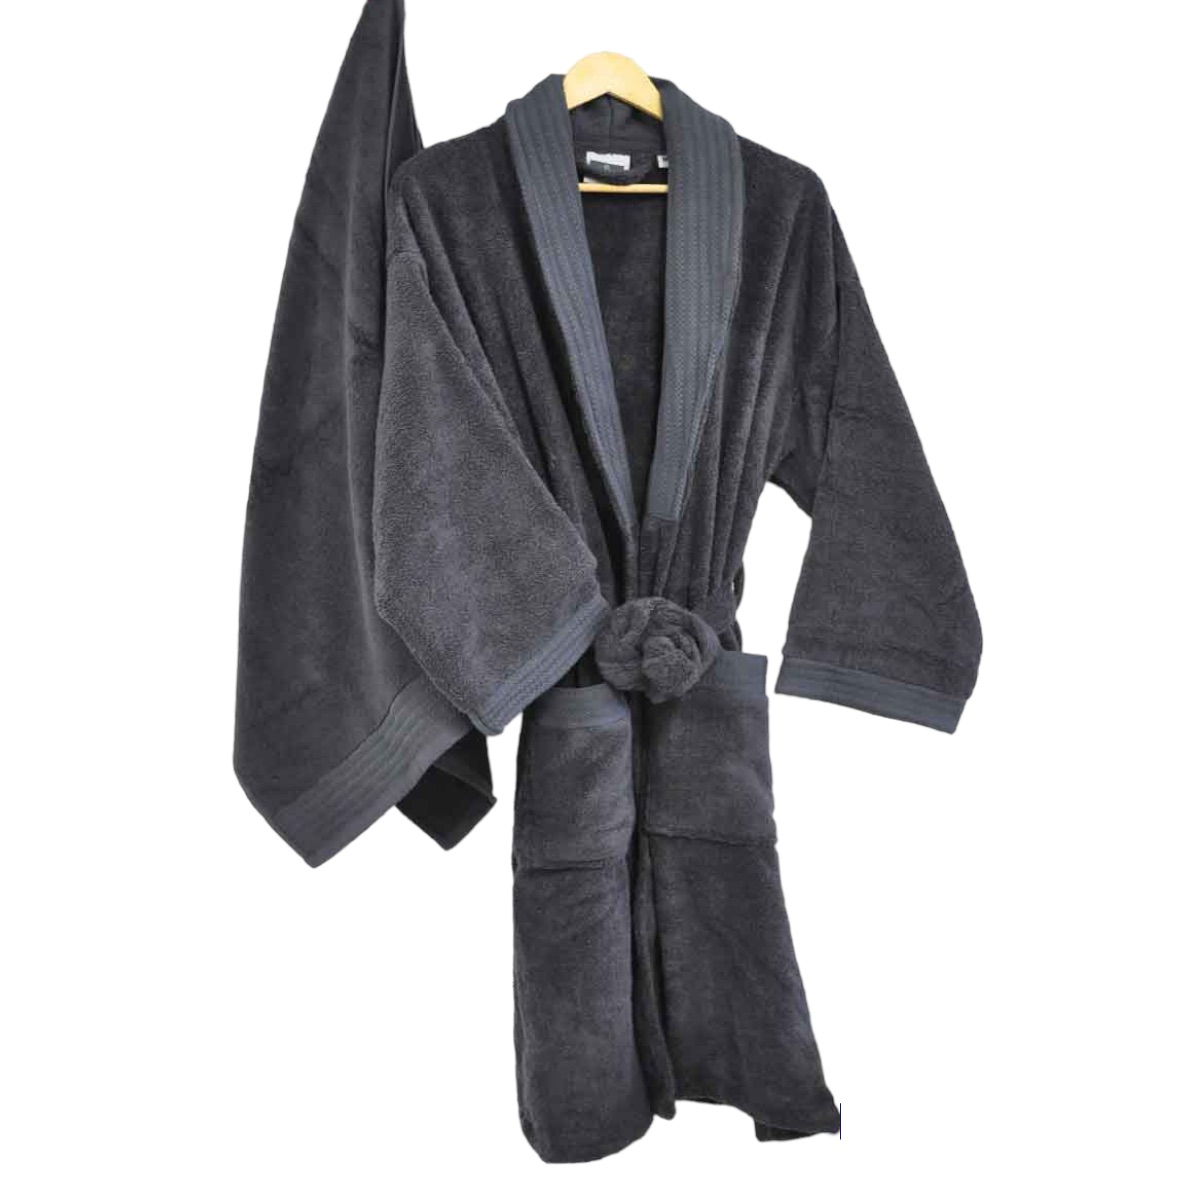 Peignoir Kimono Douceur - Coton/ Modal 400g/m²